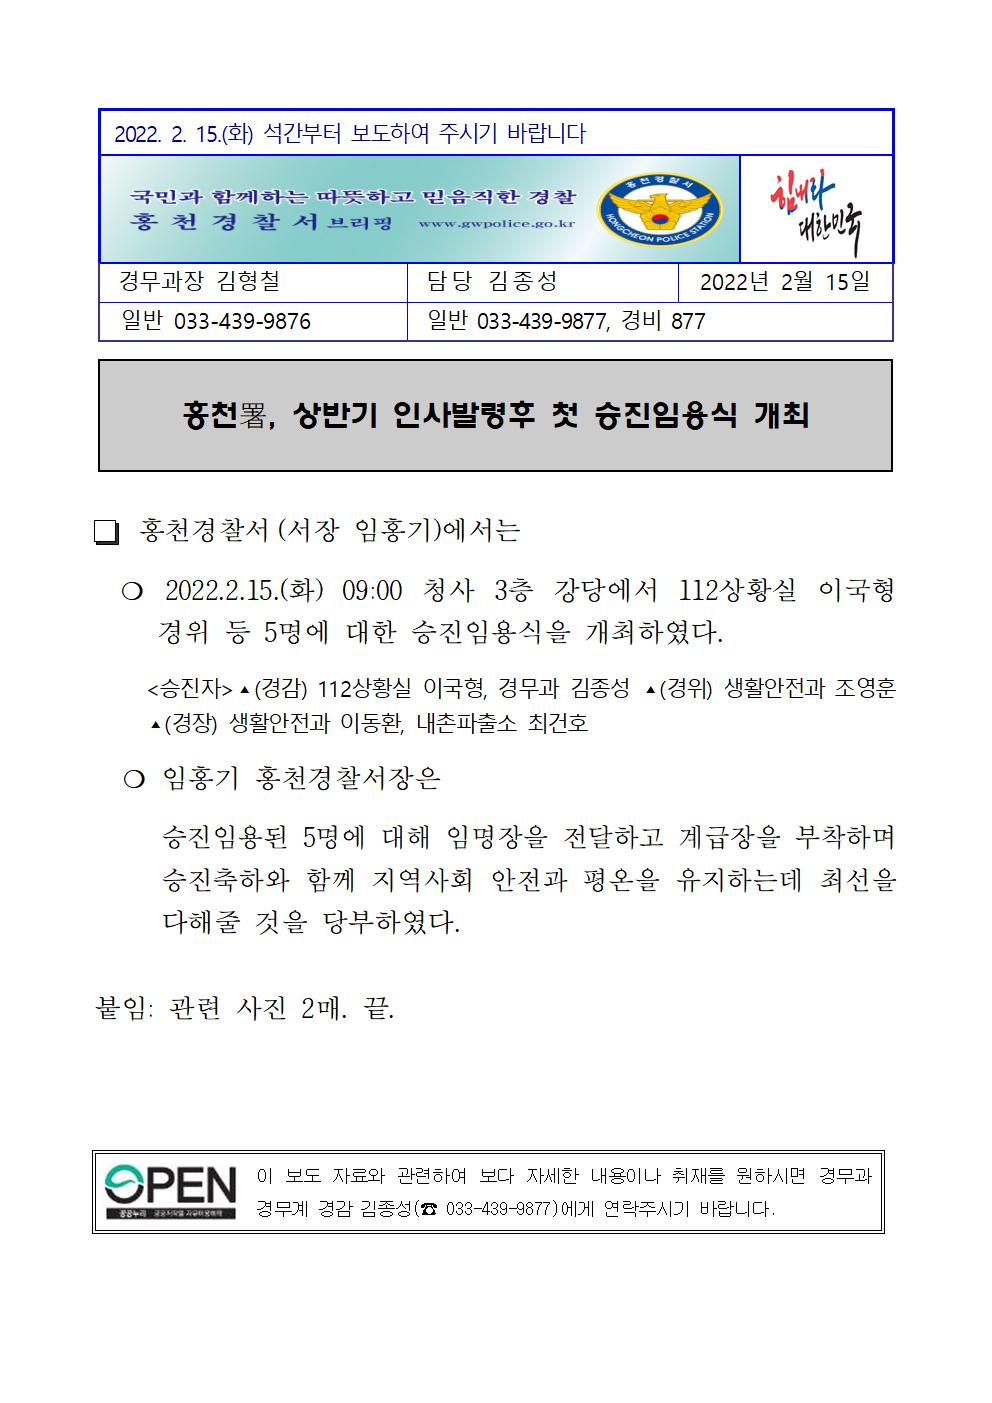 홍천경찰서 승진자 임용식-홍천경찰서 보도자료 (220215 승진임용식)001